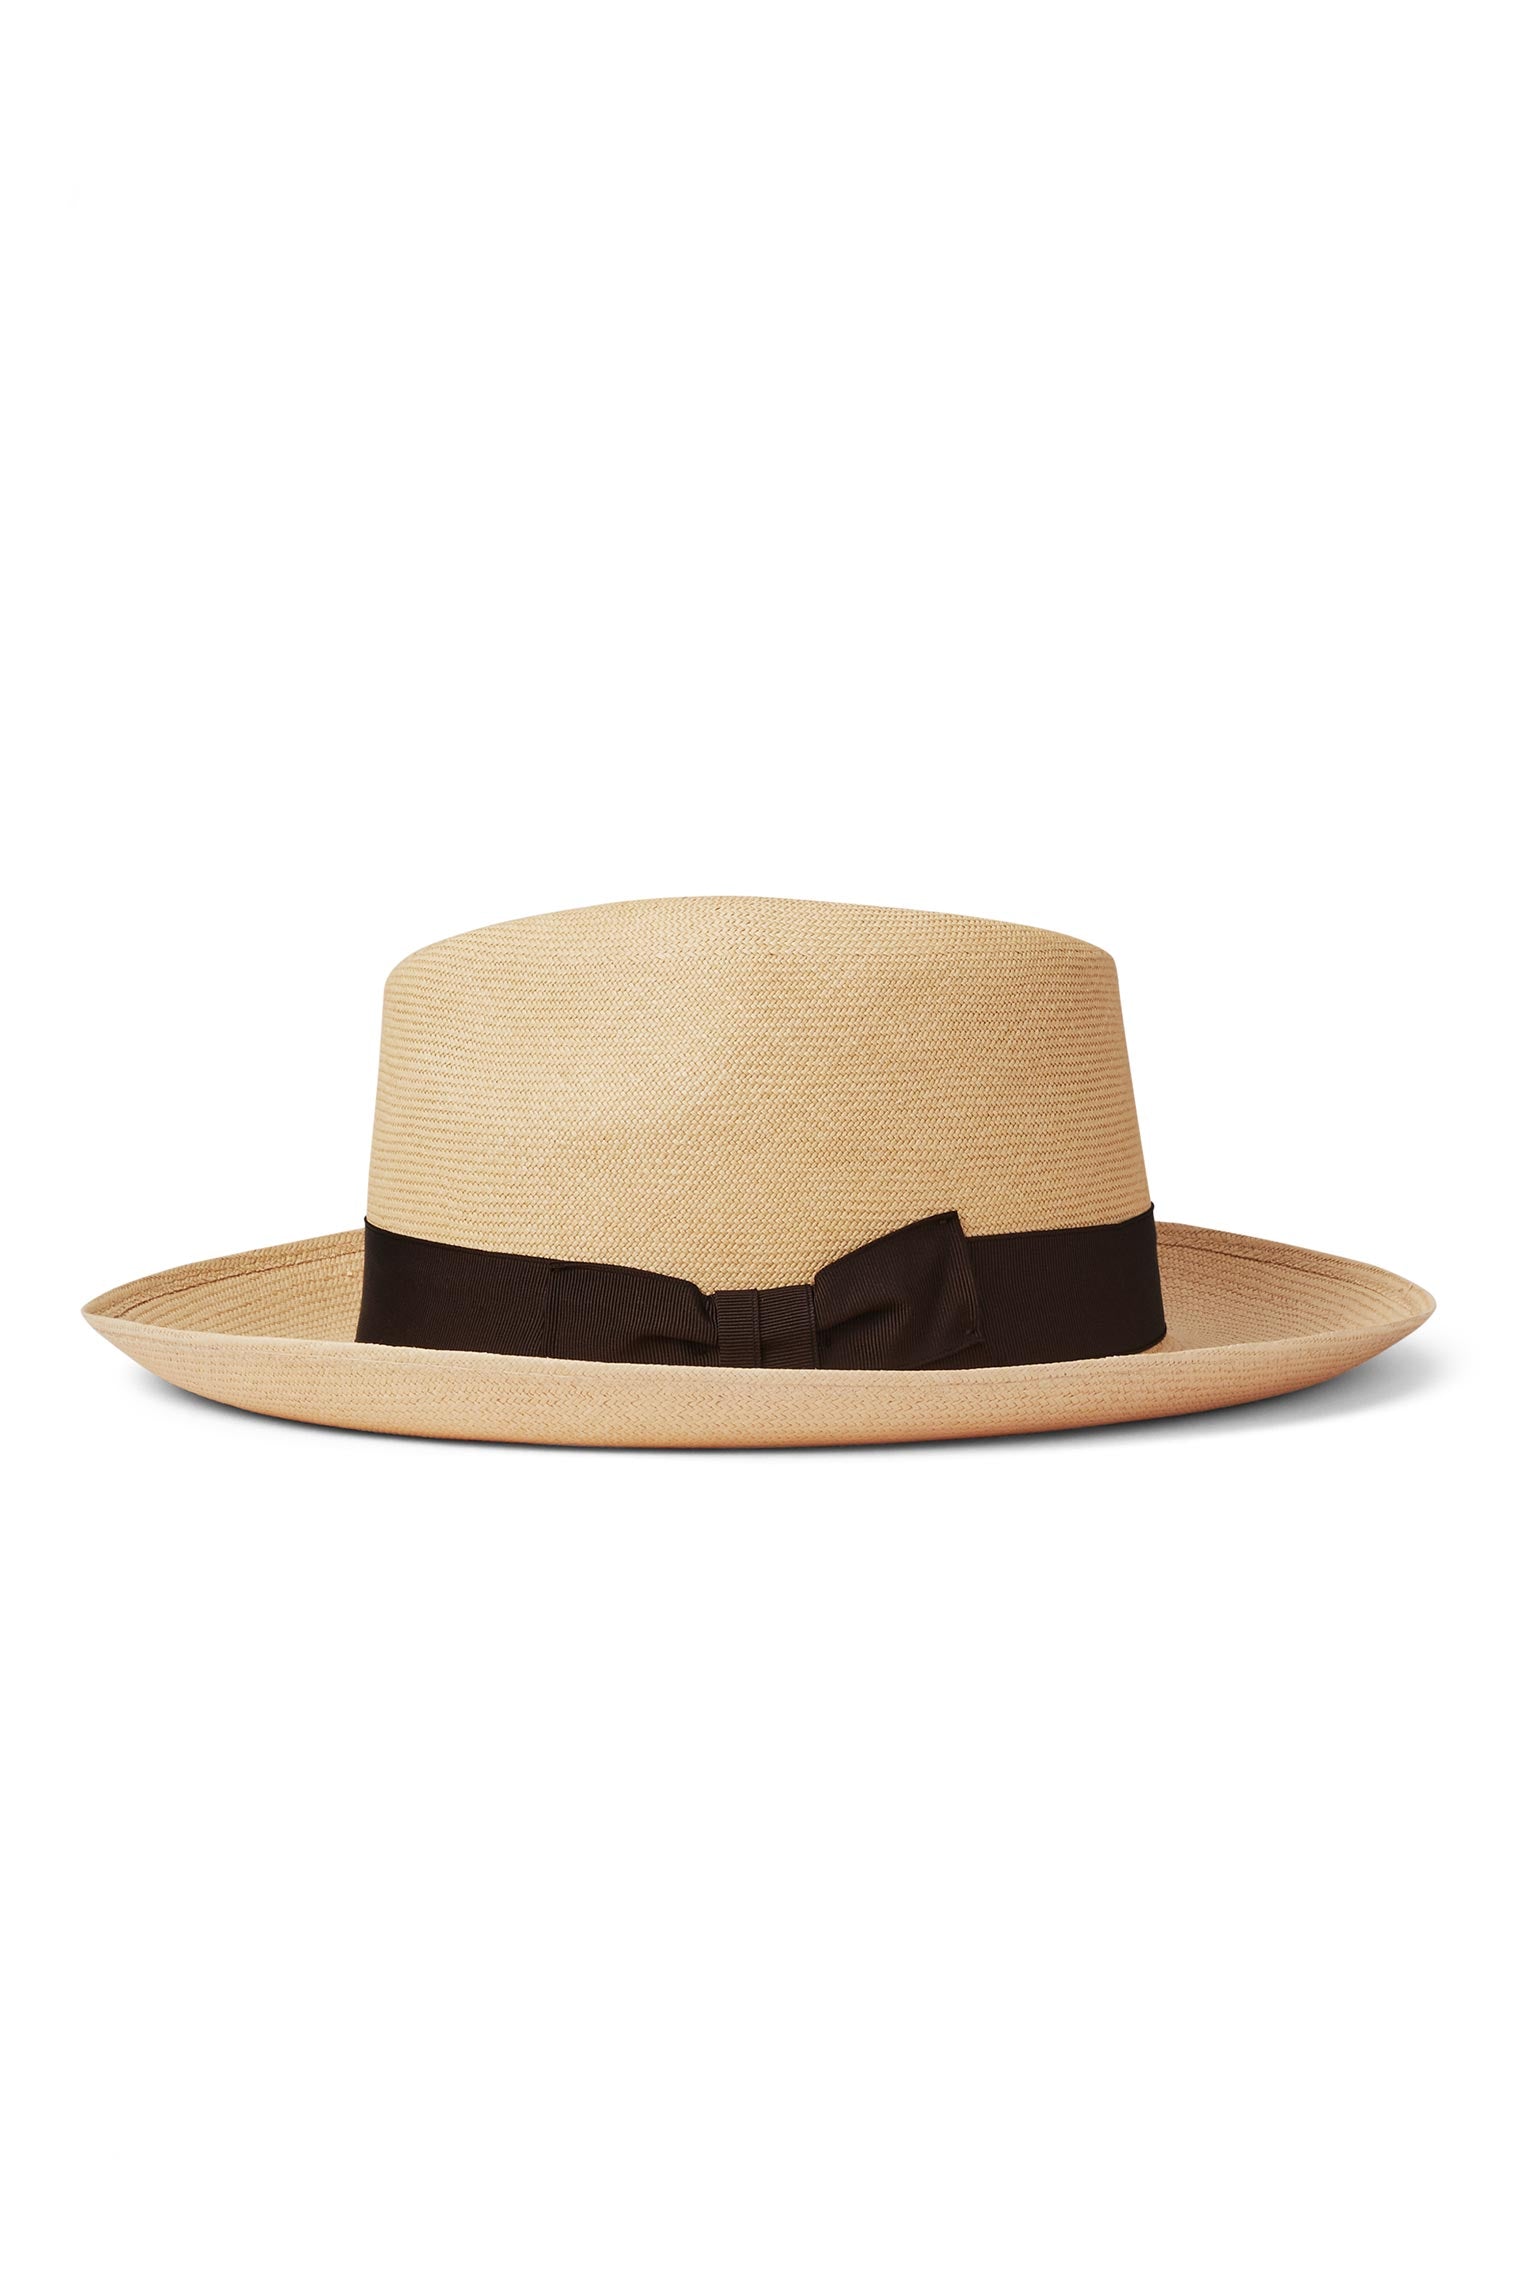 Ventnor Cuenca Ultra-fino Panama - Men's Hats - Lock & Co. Hatters London UK